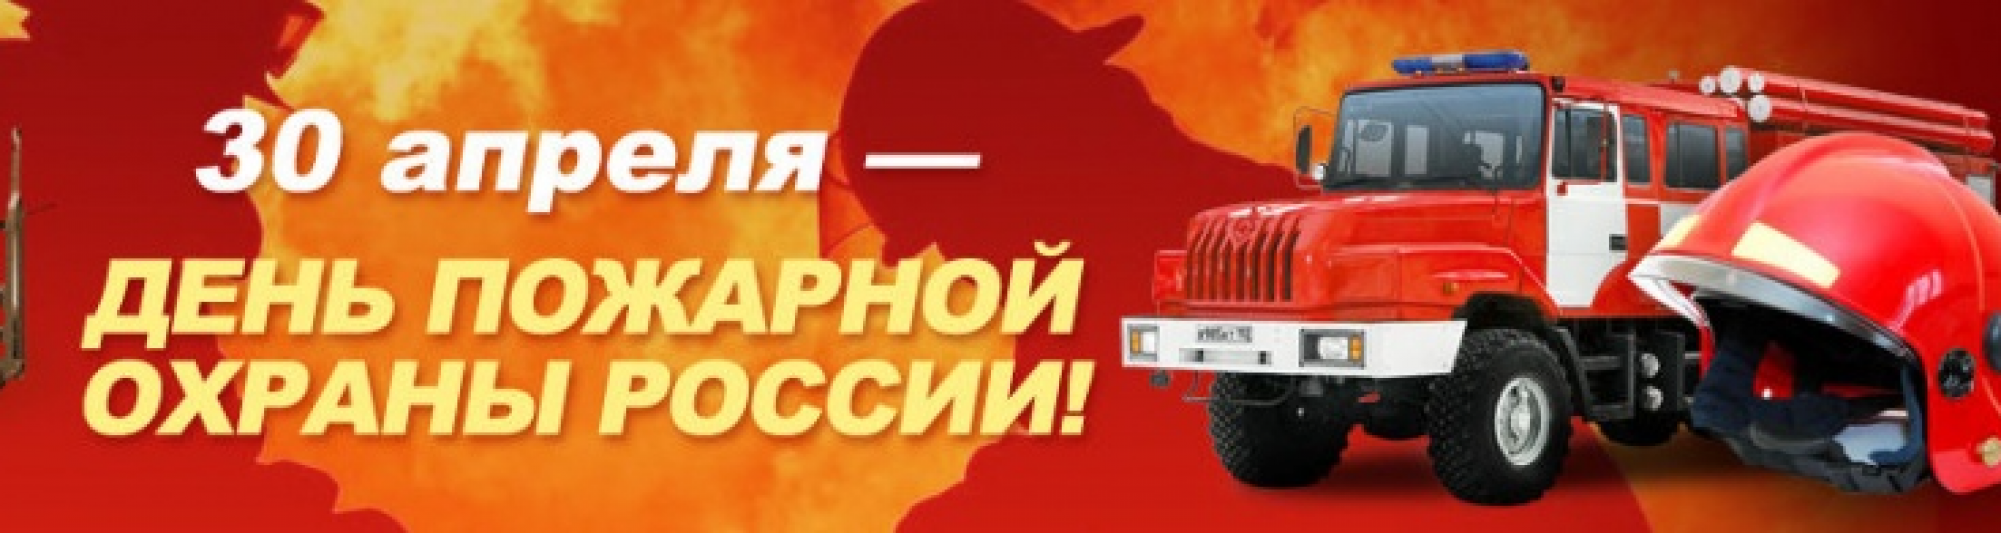 Поздравление с Днем пожарной охраны России 